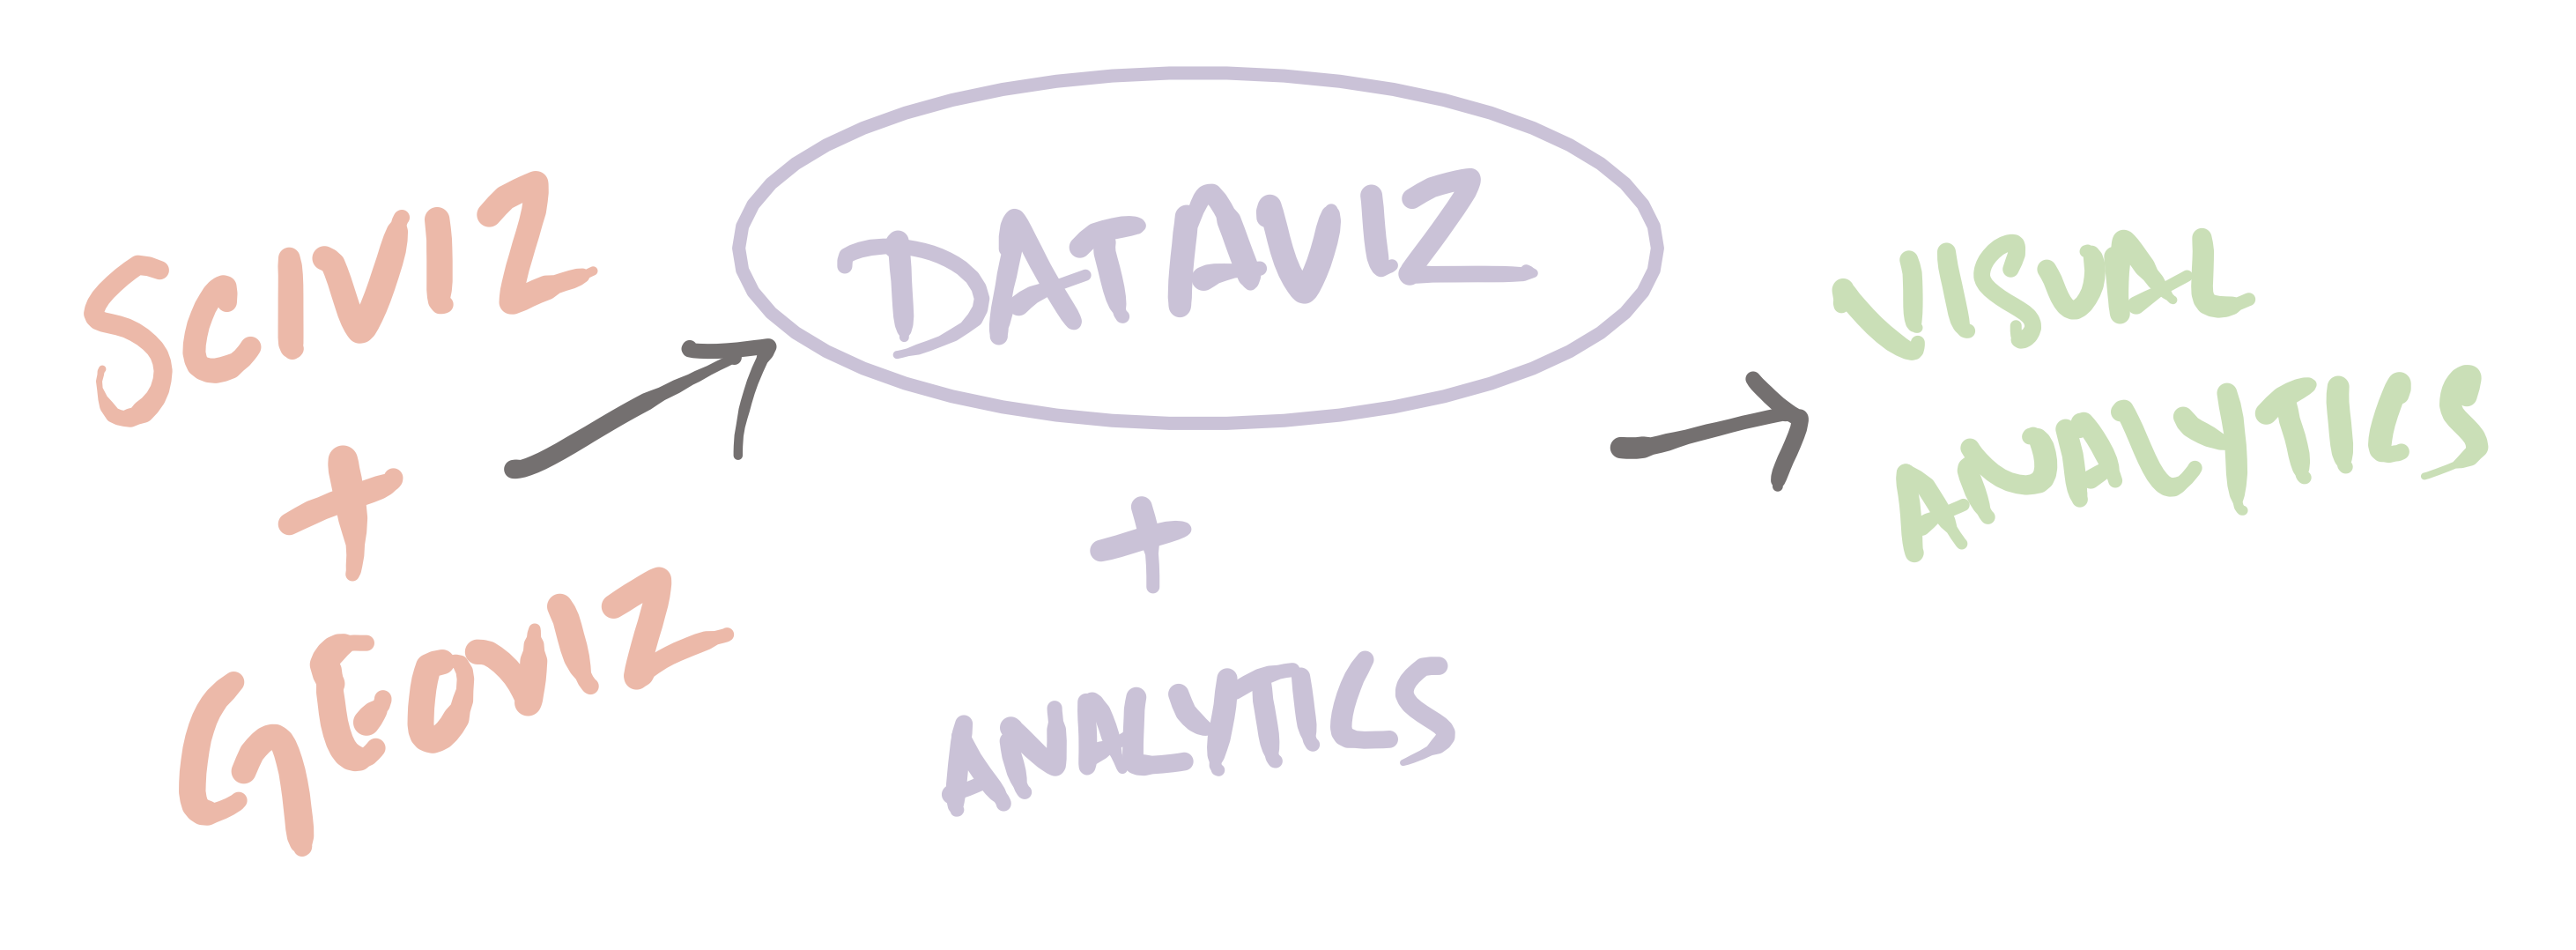 SciViz + GeoViz = DataViZ; DataViz + Analytics = Visual Analytics